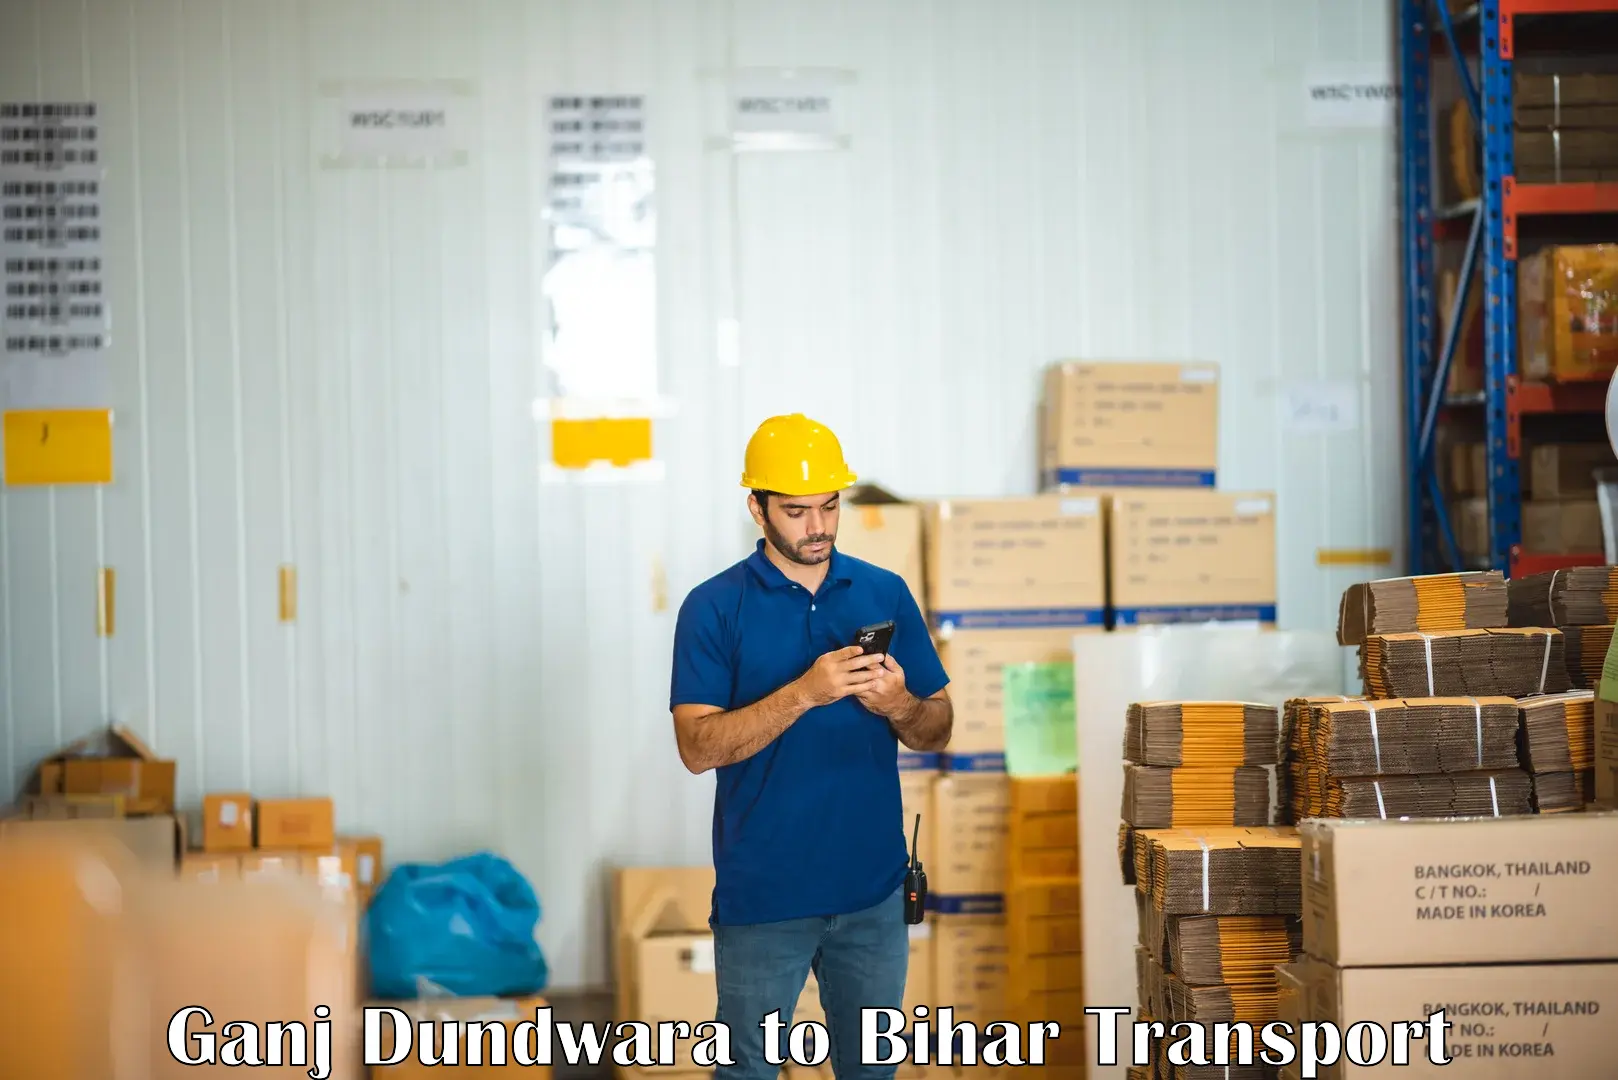 Transport in sharing Ganj Dundwara to Bihar